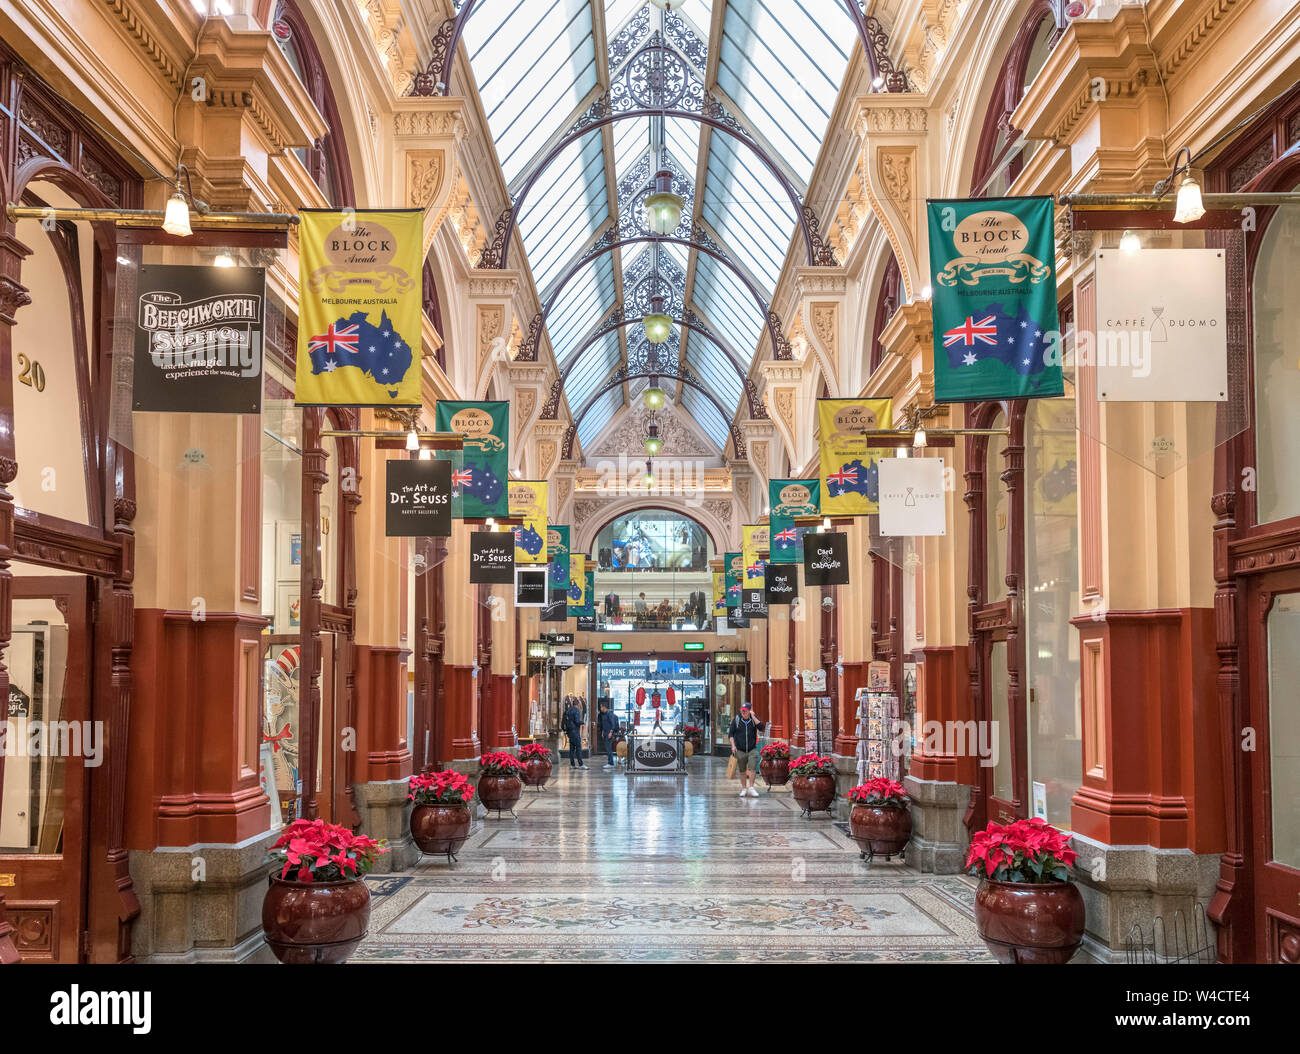 Der Block Arcade, Melbourne - einen viktorianischen Ära Einkaufszentrum im Central Business District (CBD), Melbourne, Victoria, Australien Stockfoto